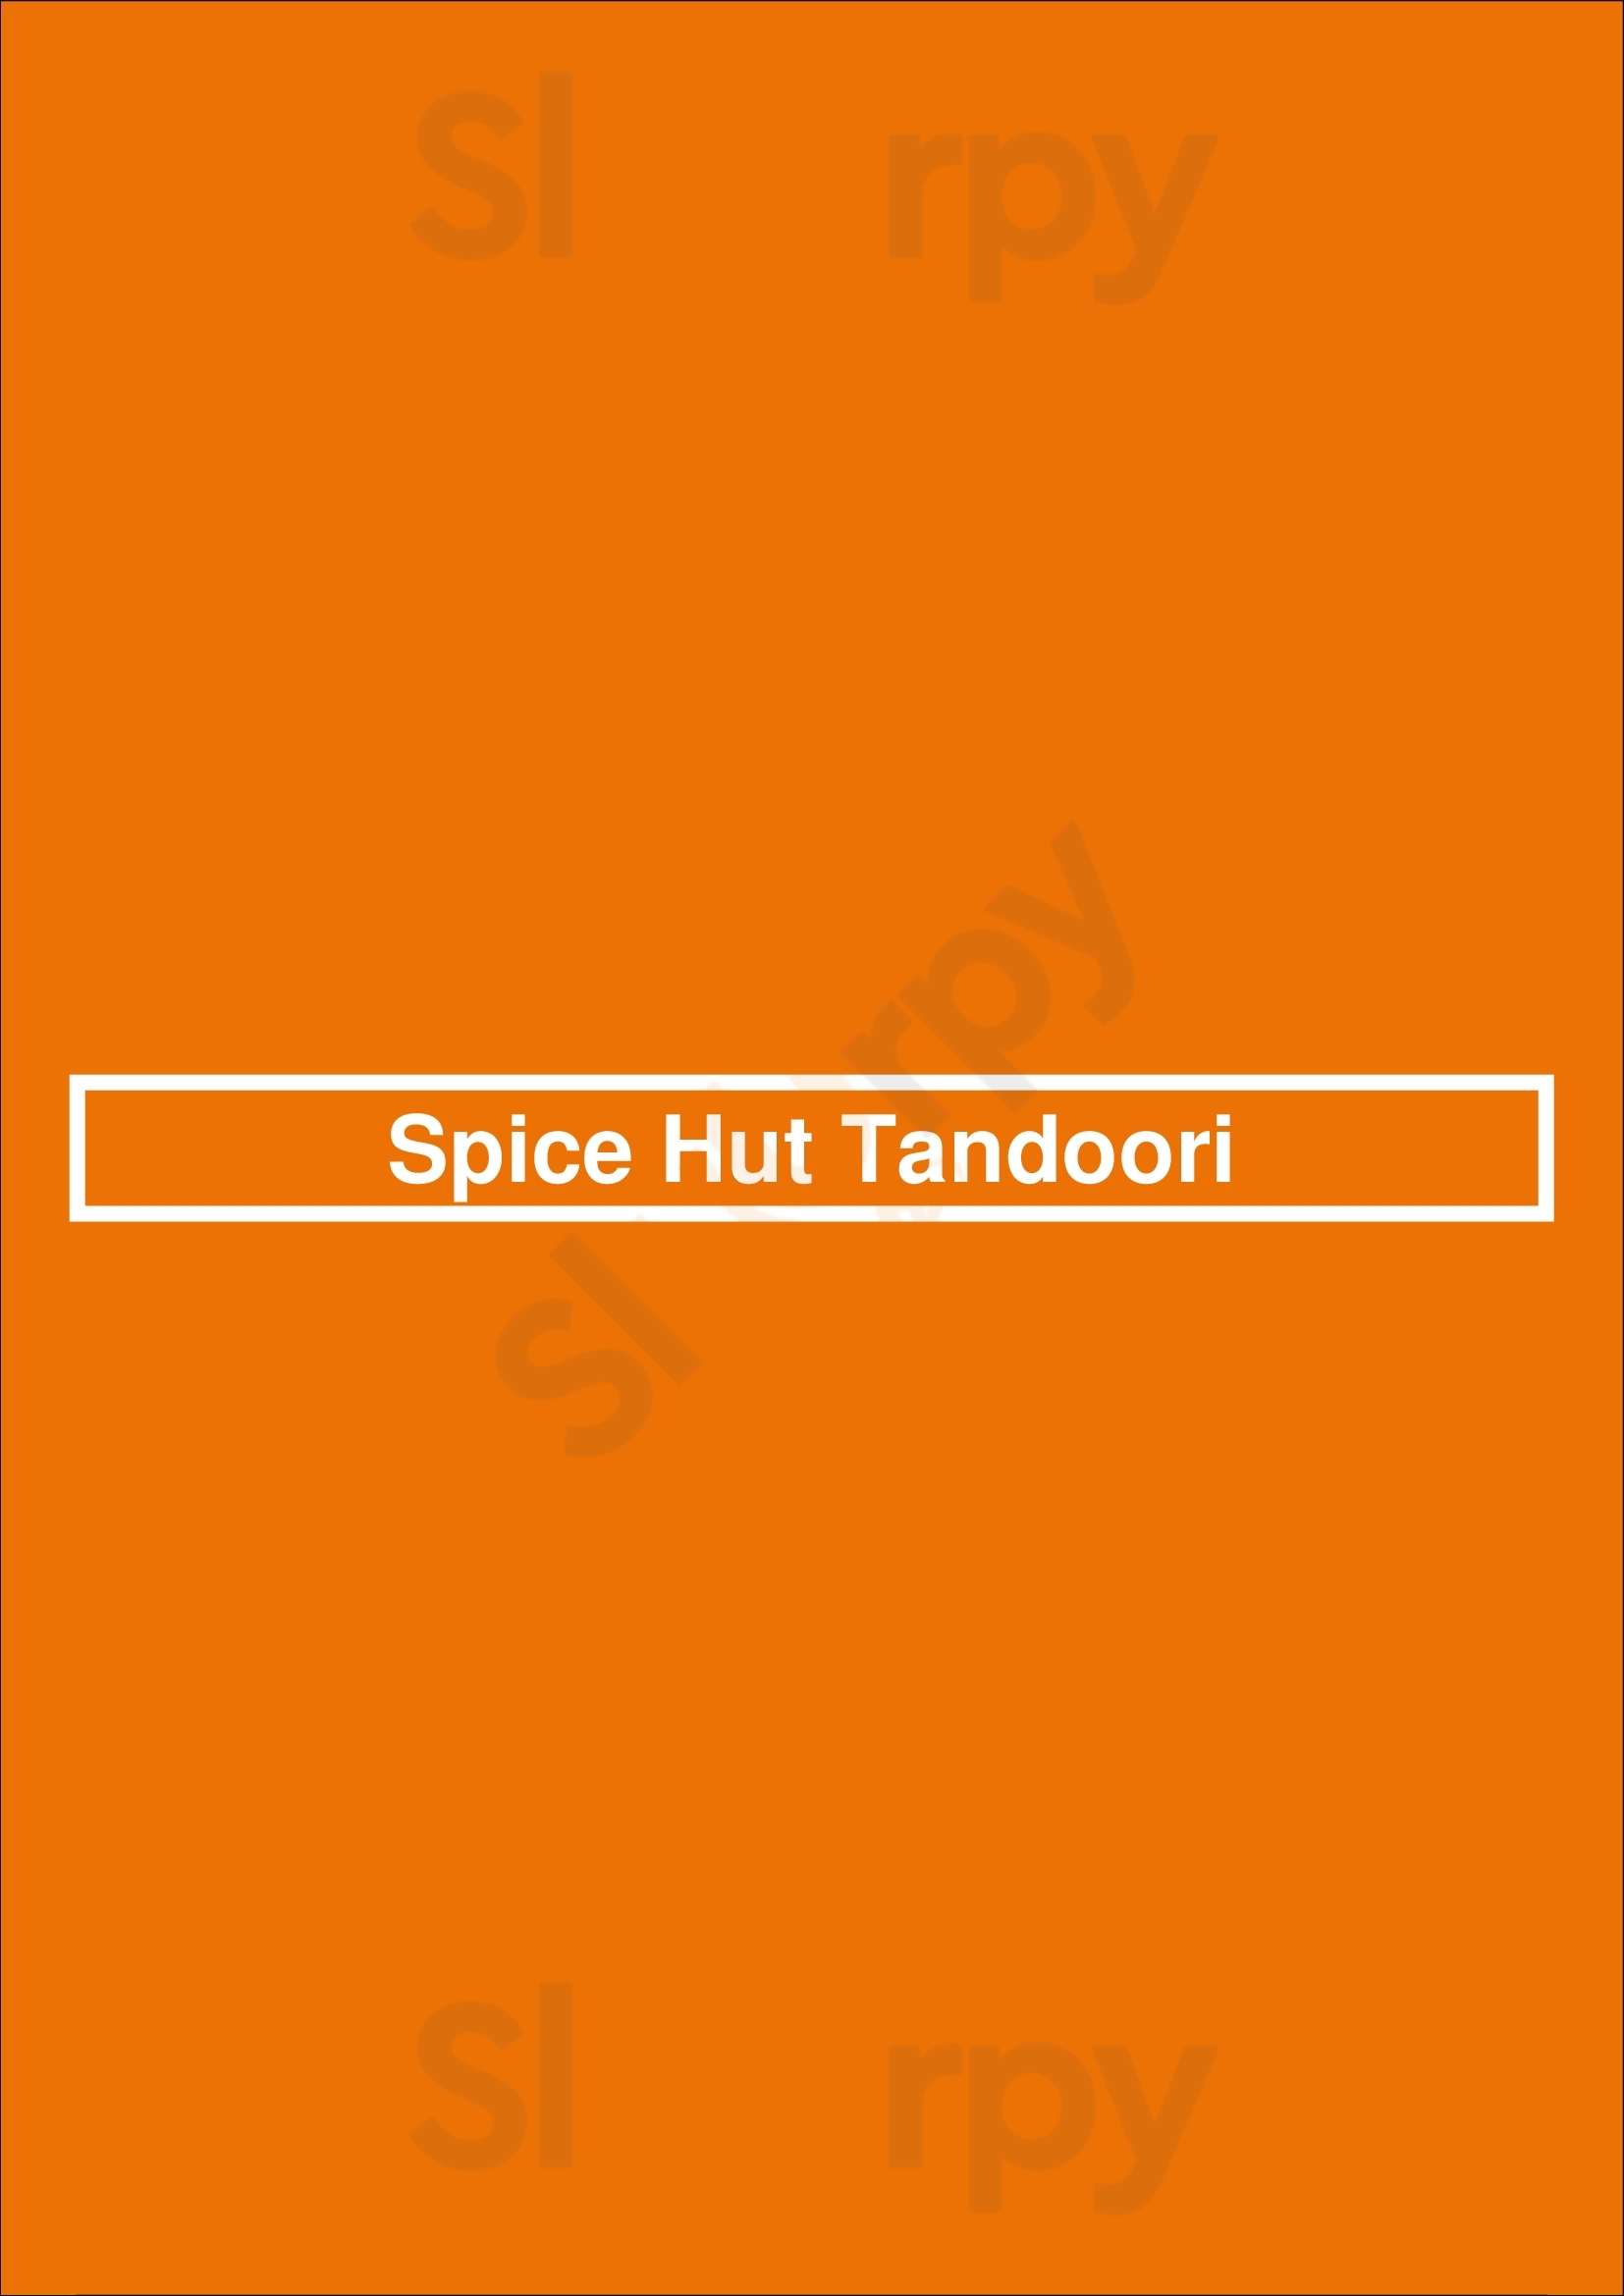 Spice Hut Tandoori Lisboa Menu - 1